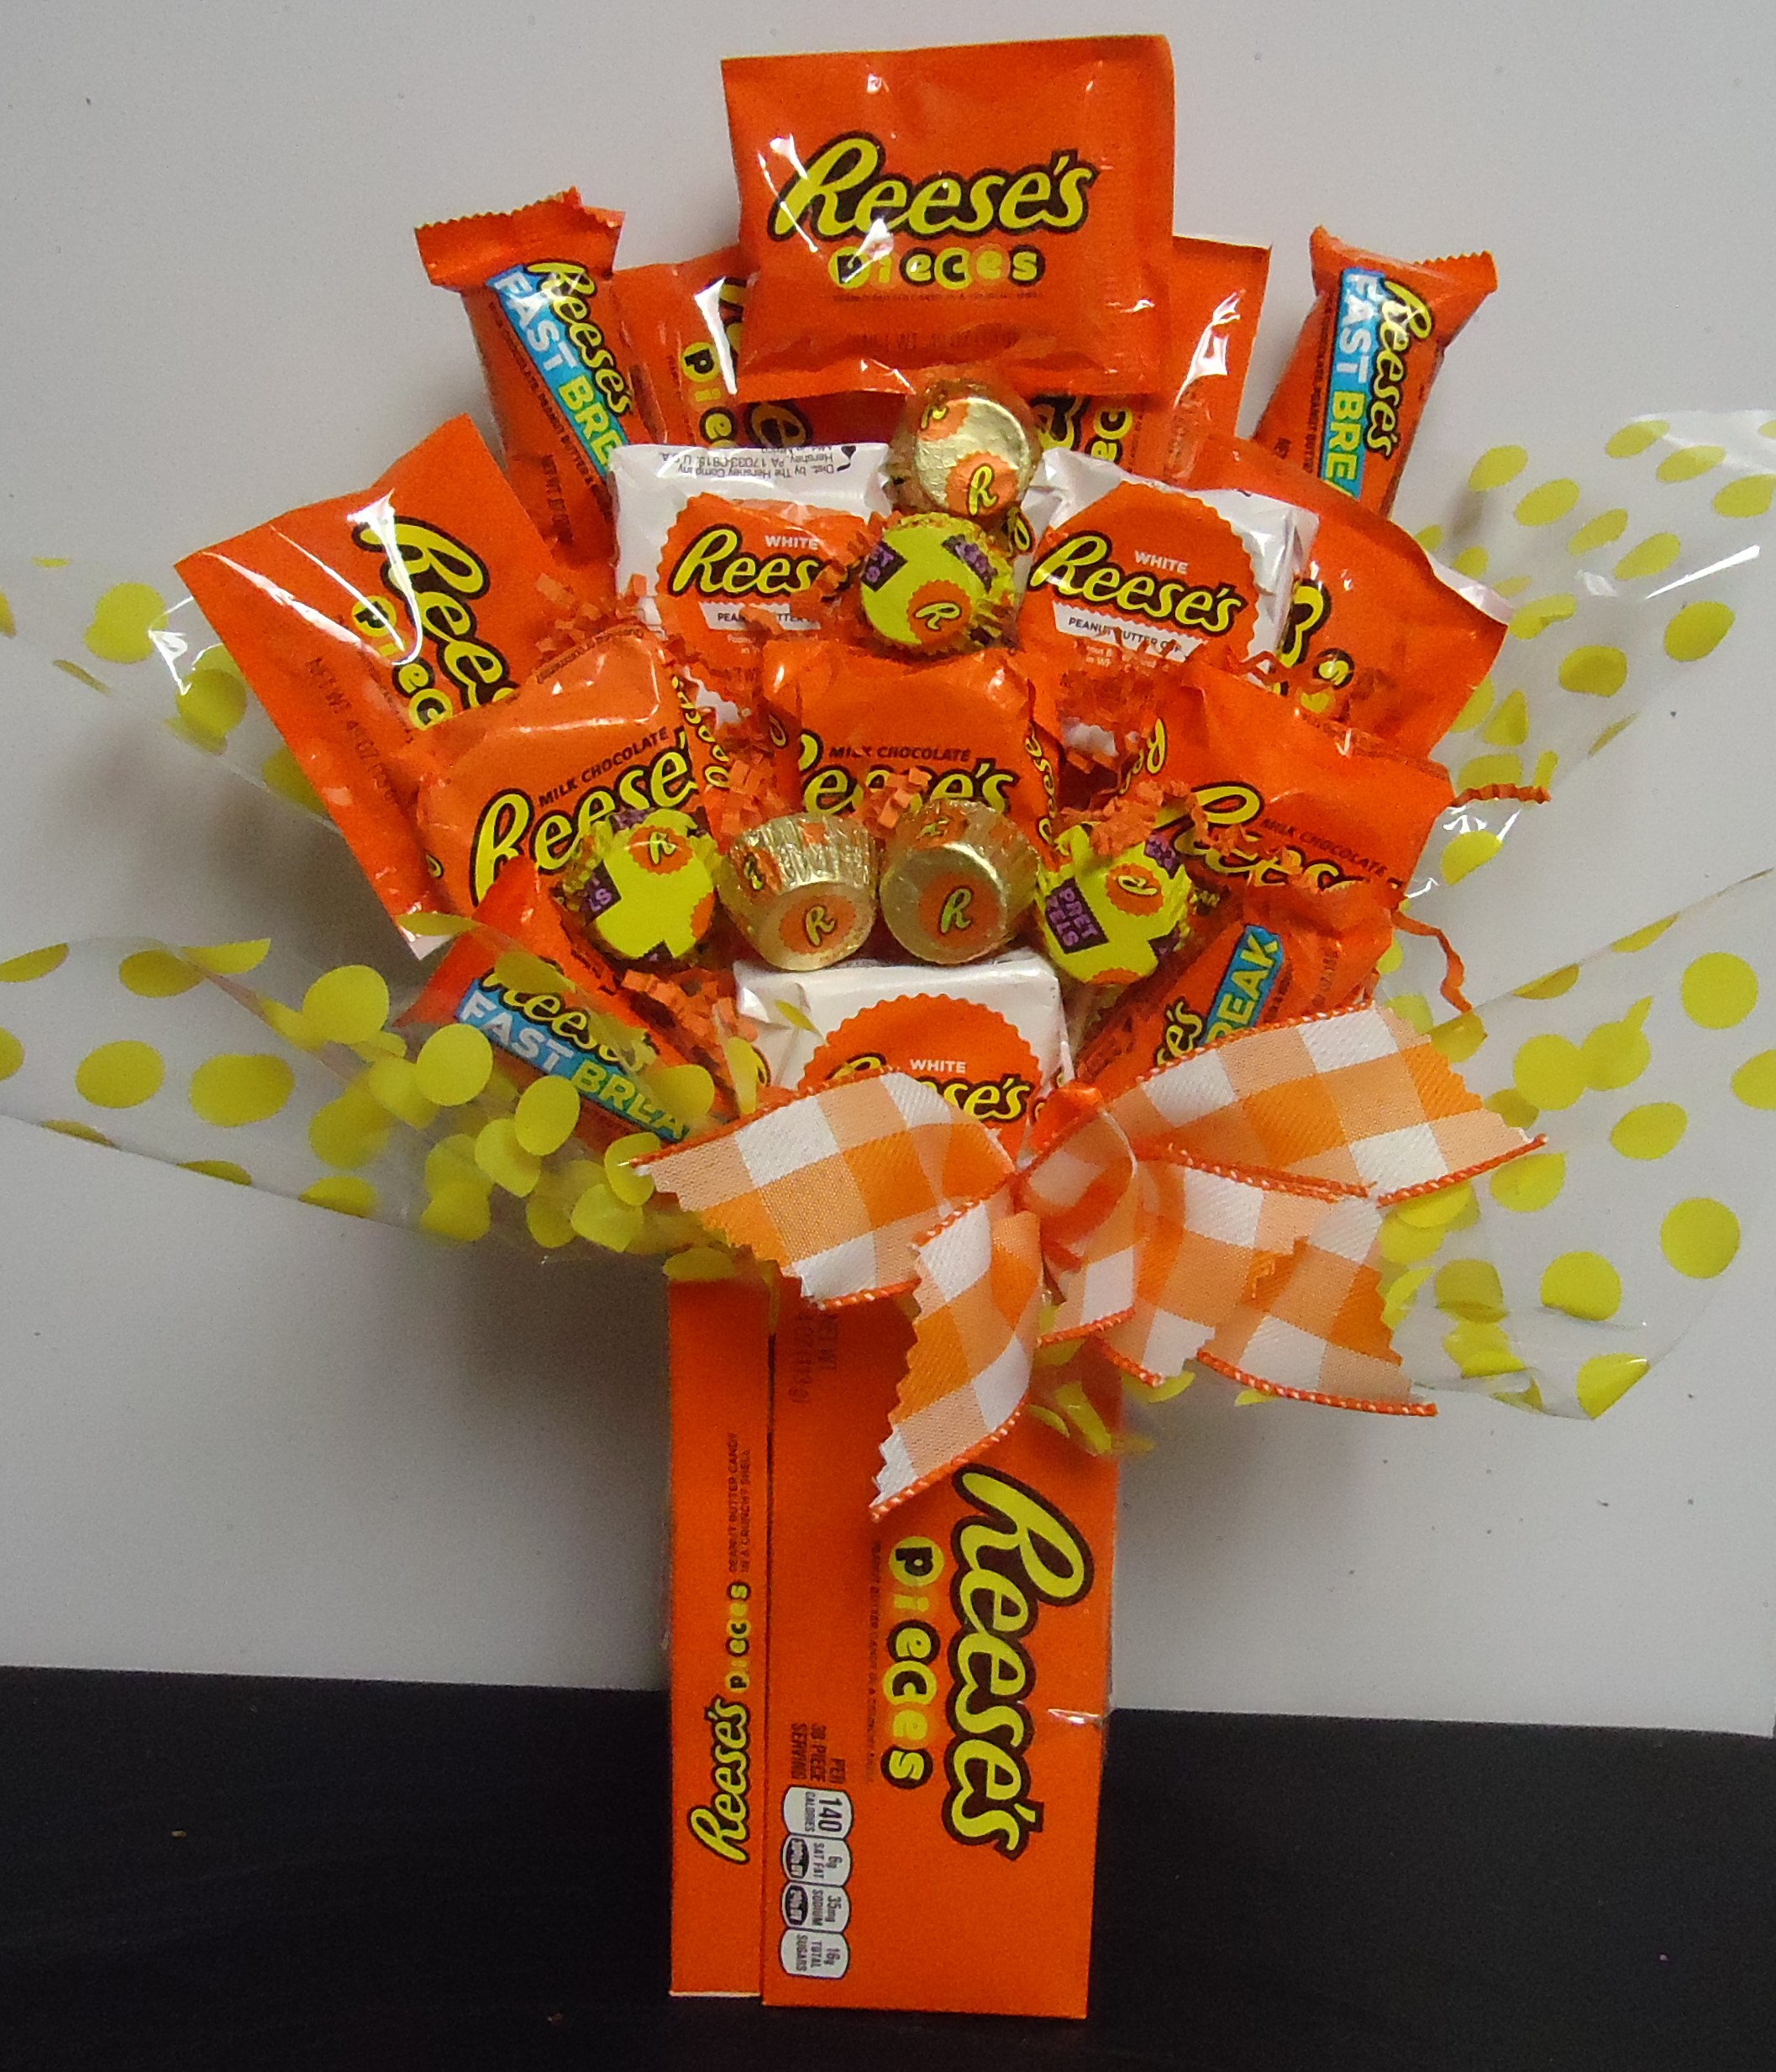 (3) "Recess" Candy Box Bouquet
$35.00